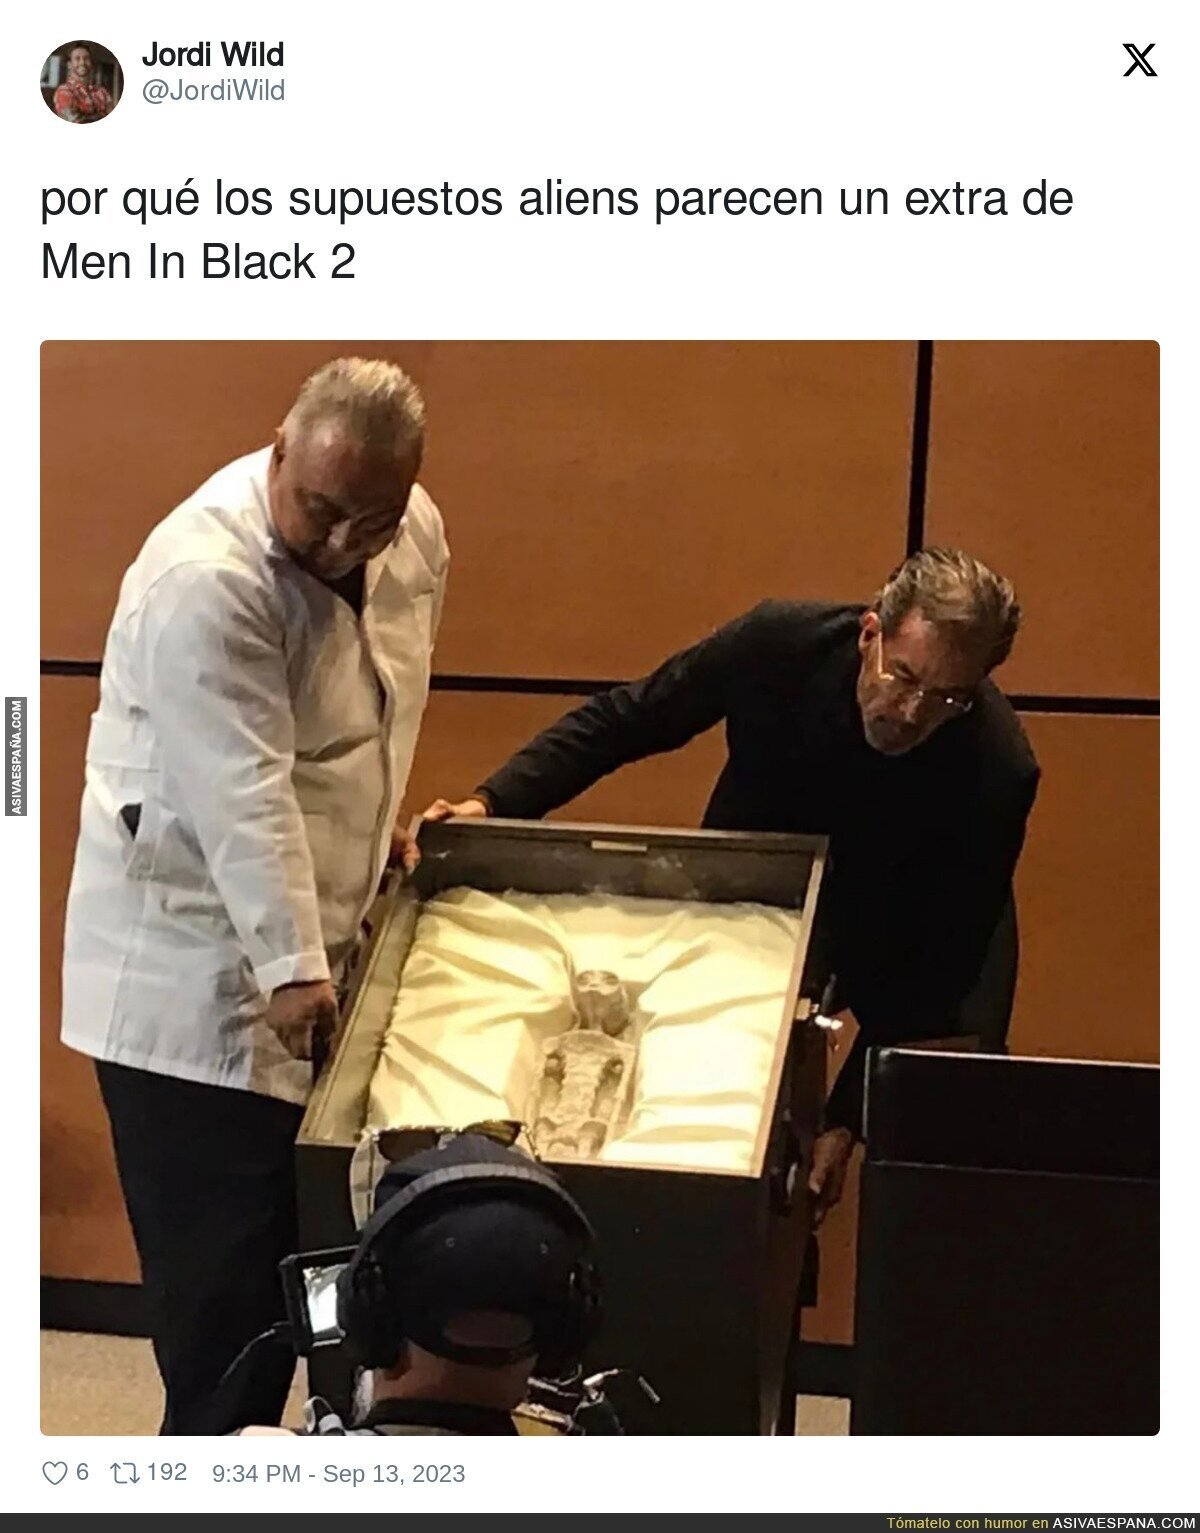 Los aliens presentados en México